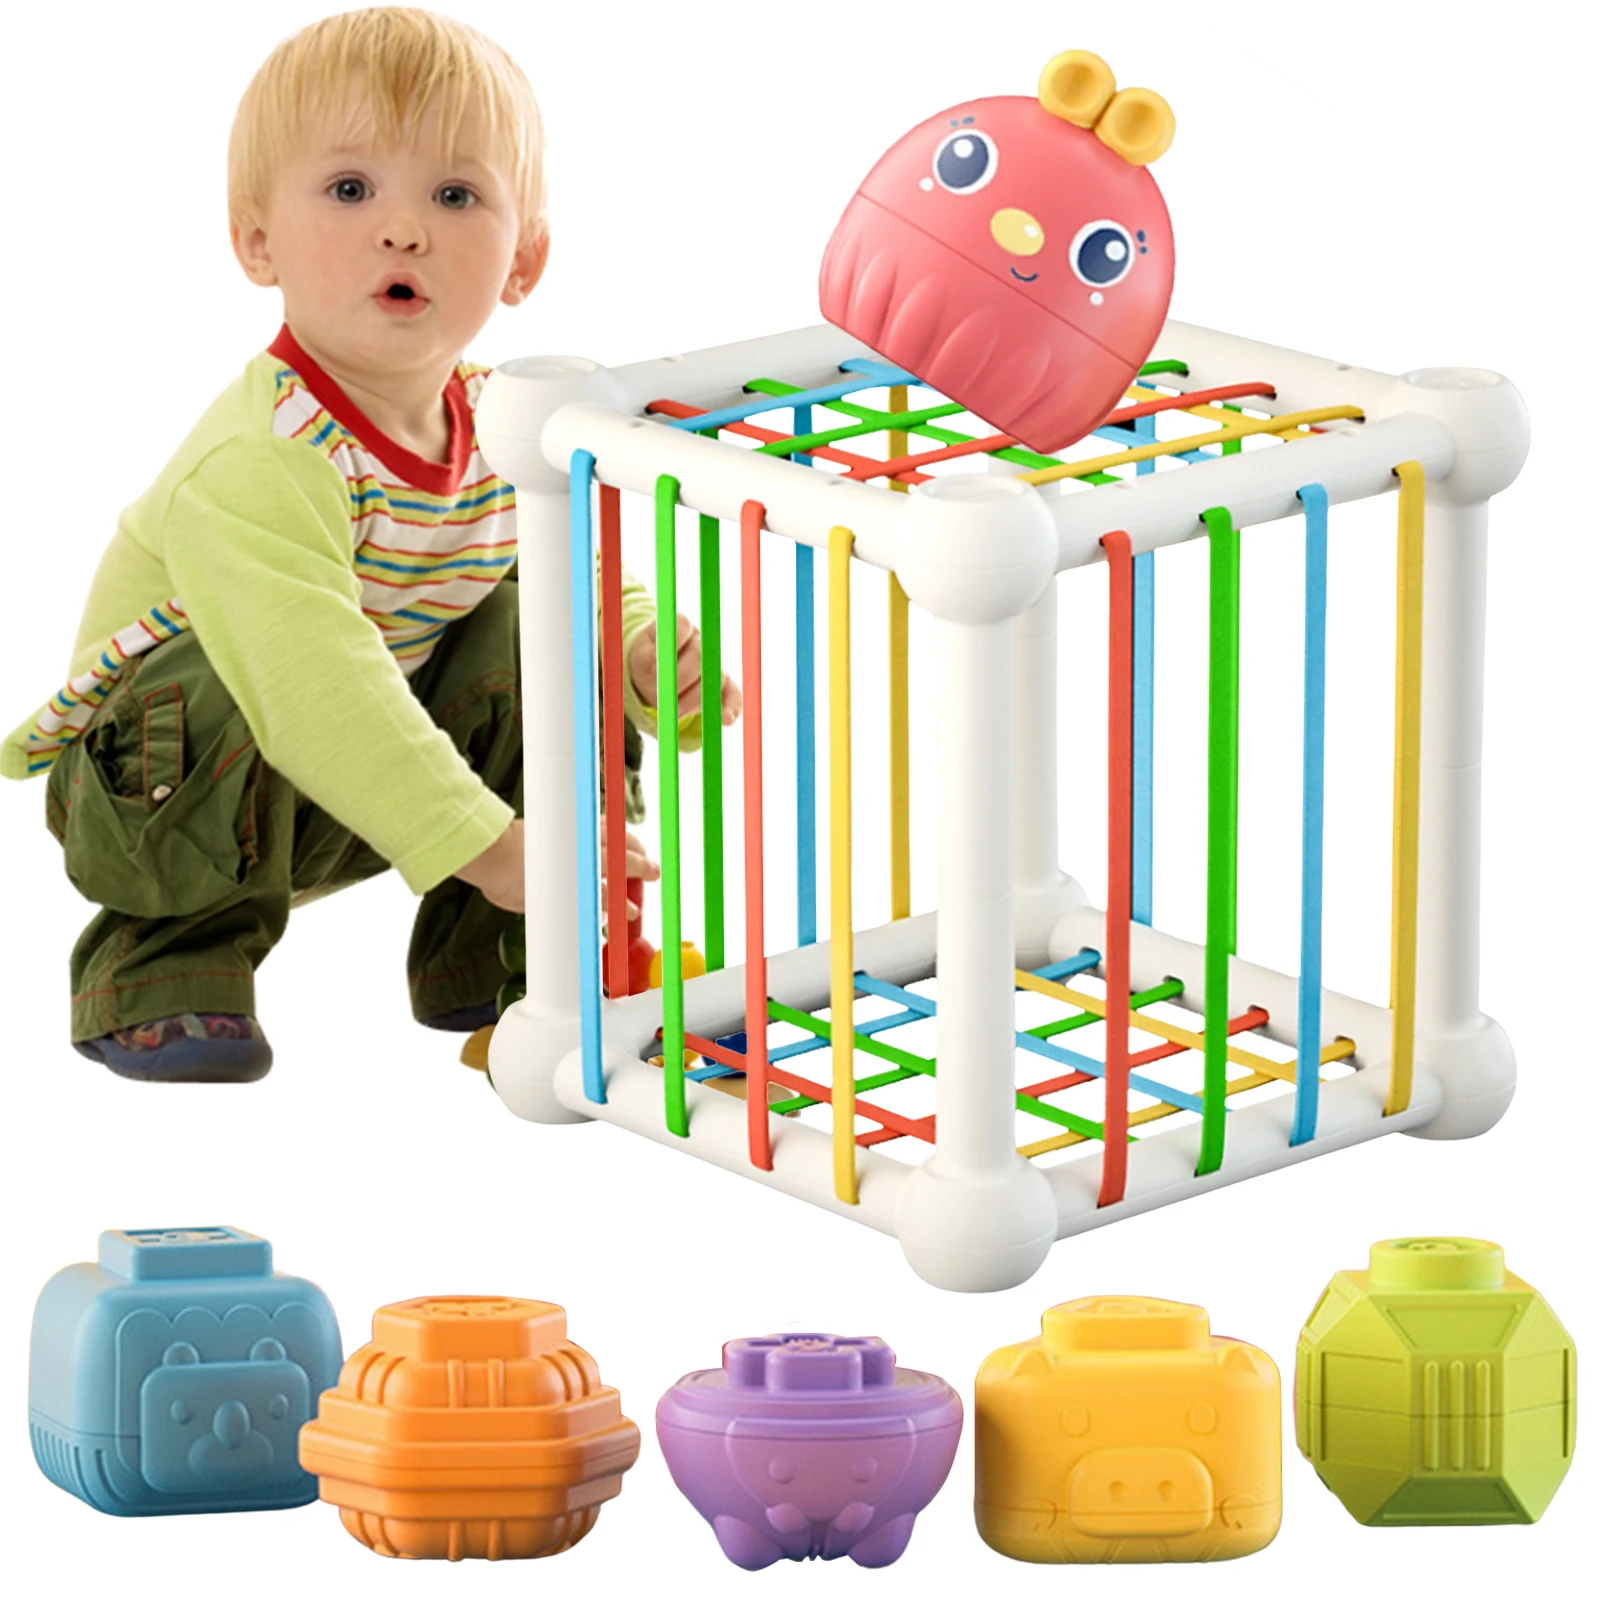 

Сортировочные игрушки в форме ребенка, красочные текстурированные строительные блоки Монтессори, обучающие игрушки для малышей, подарки на день рождения